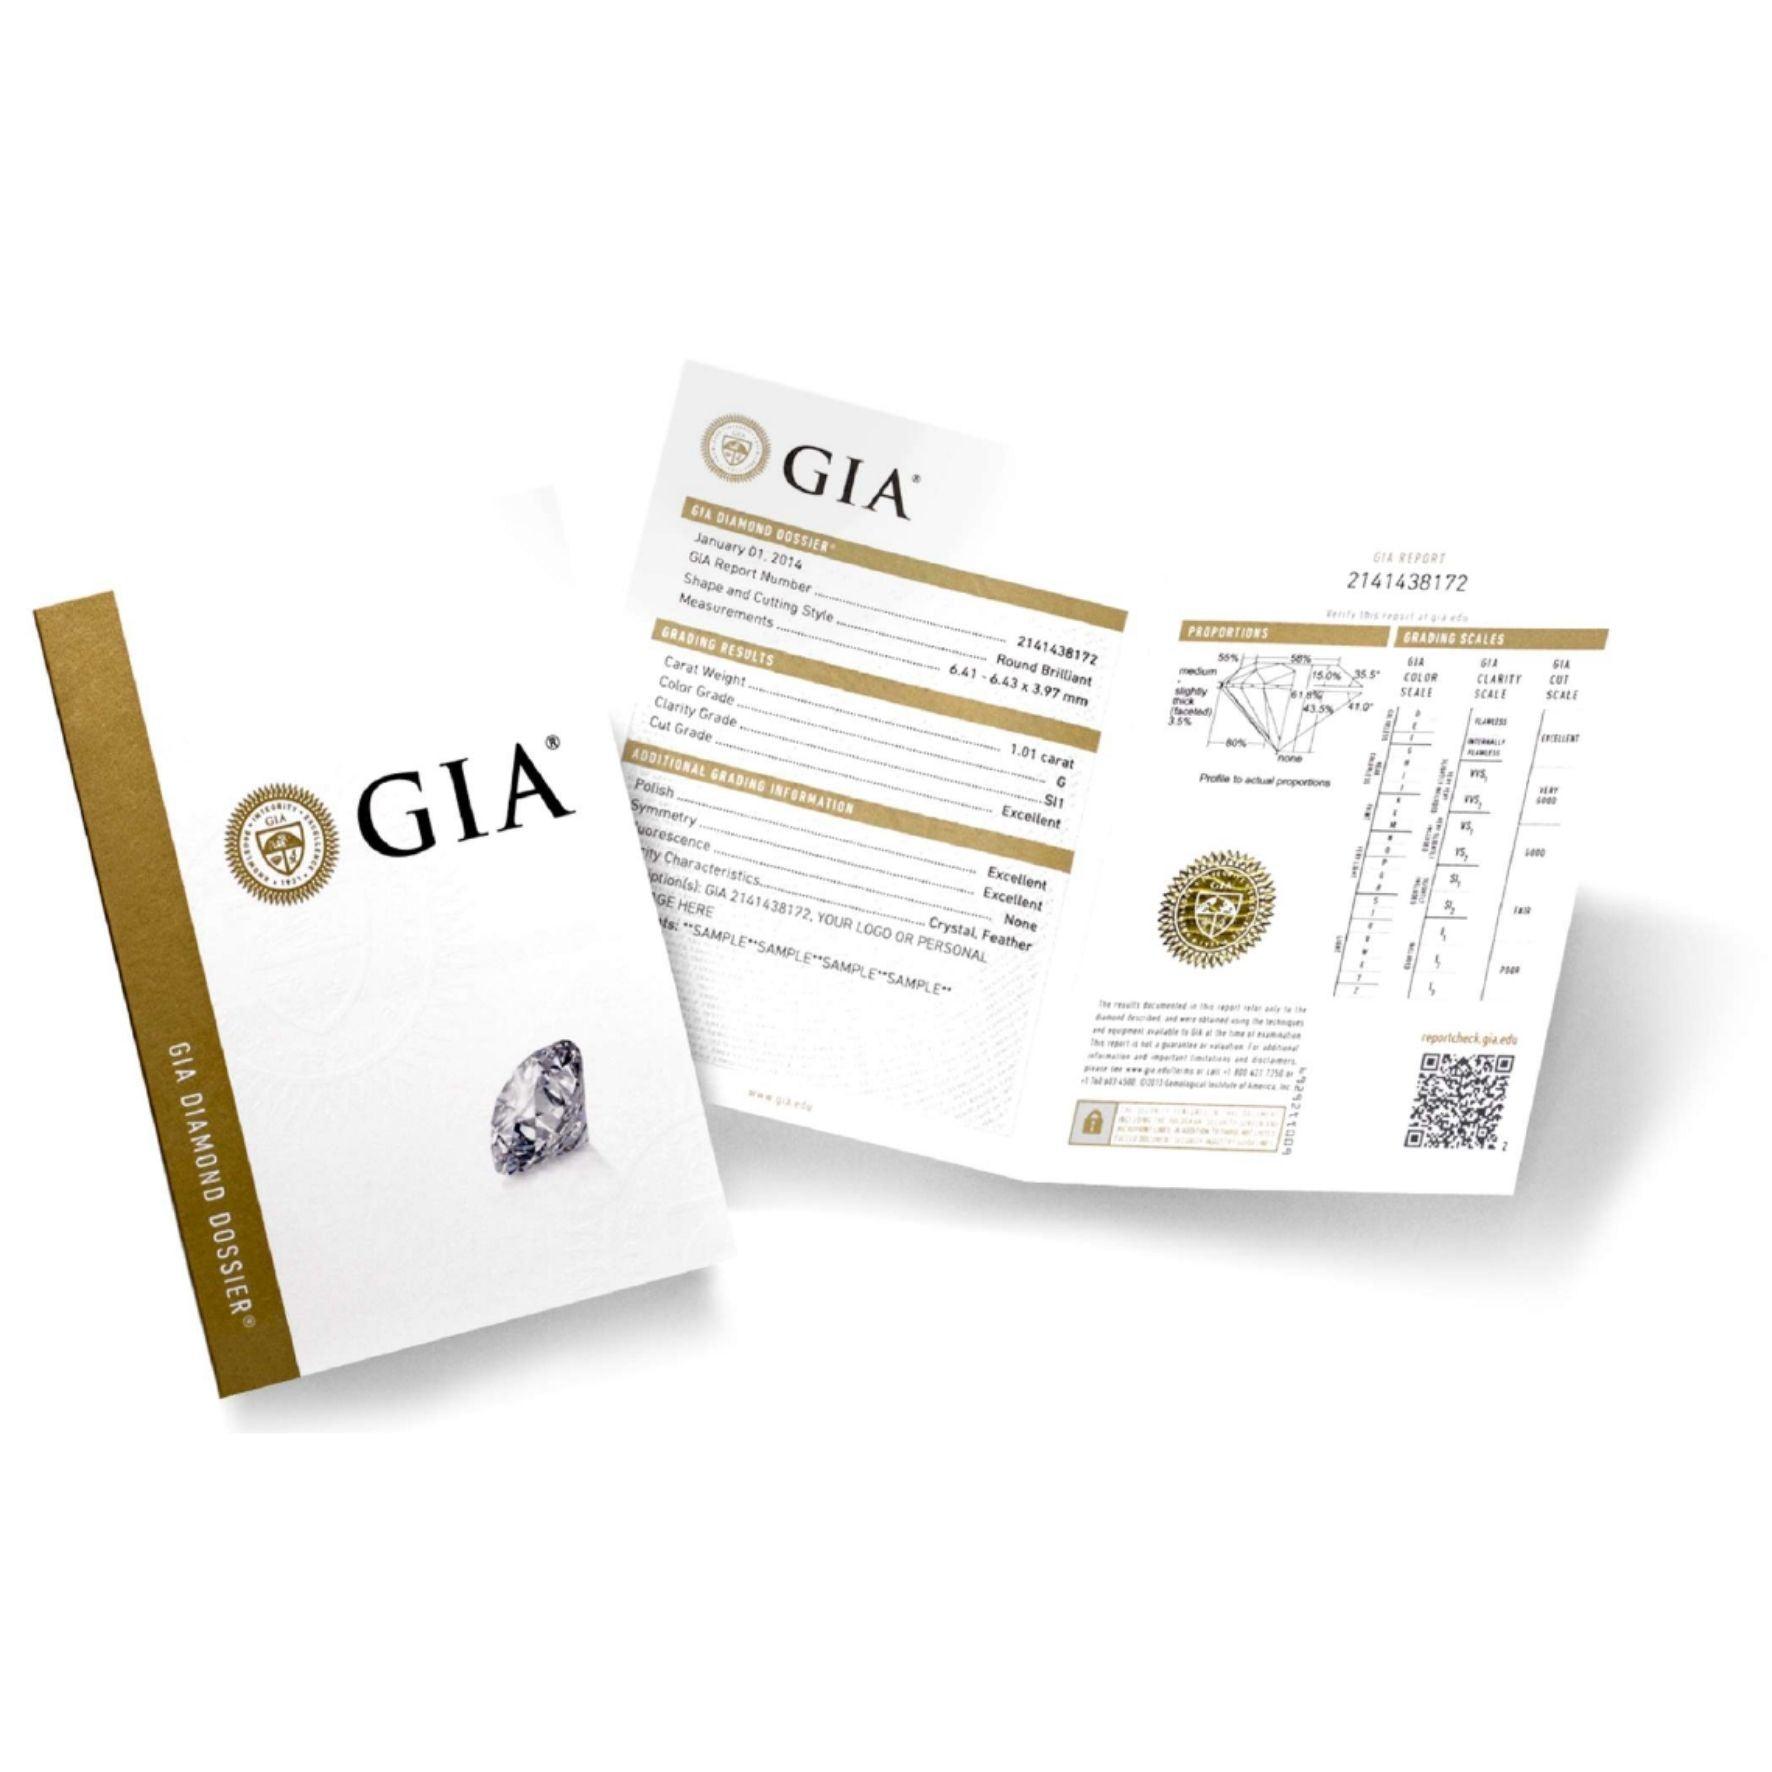 Πιστοποίηση διαμαντιών GIA για μονόπετρο δαχτυλίδι αρραβώνα.